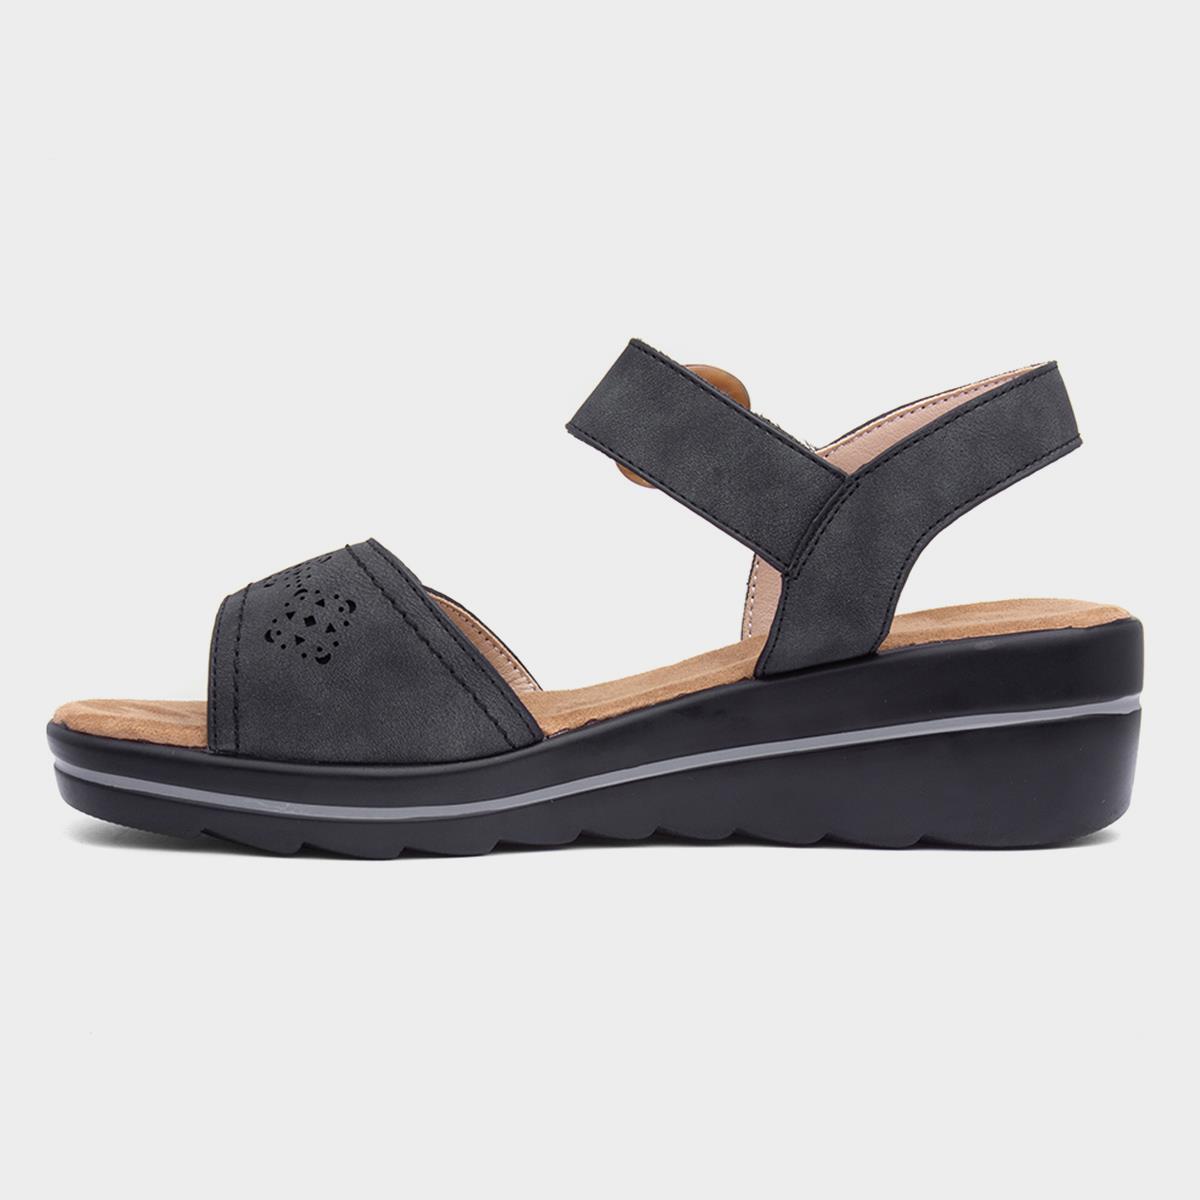 Lilley & Skinner Majorca Womens Black Sandal-190208 | Shoe Zone